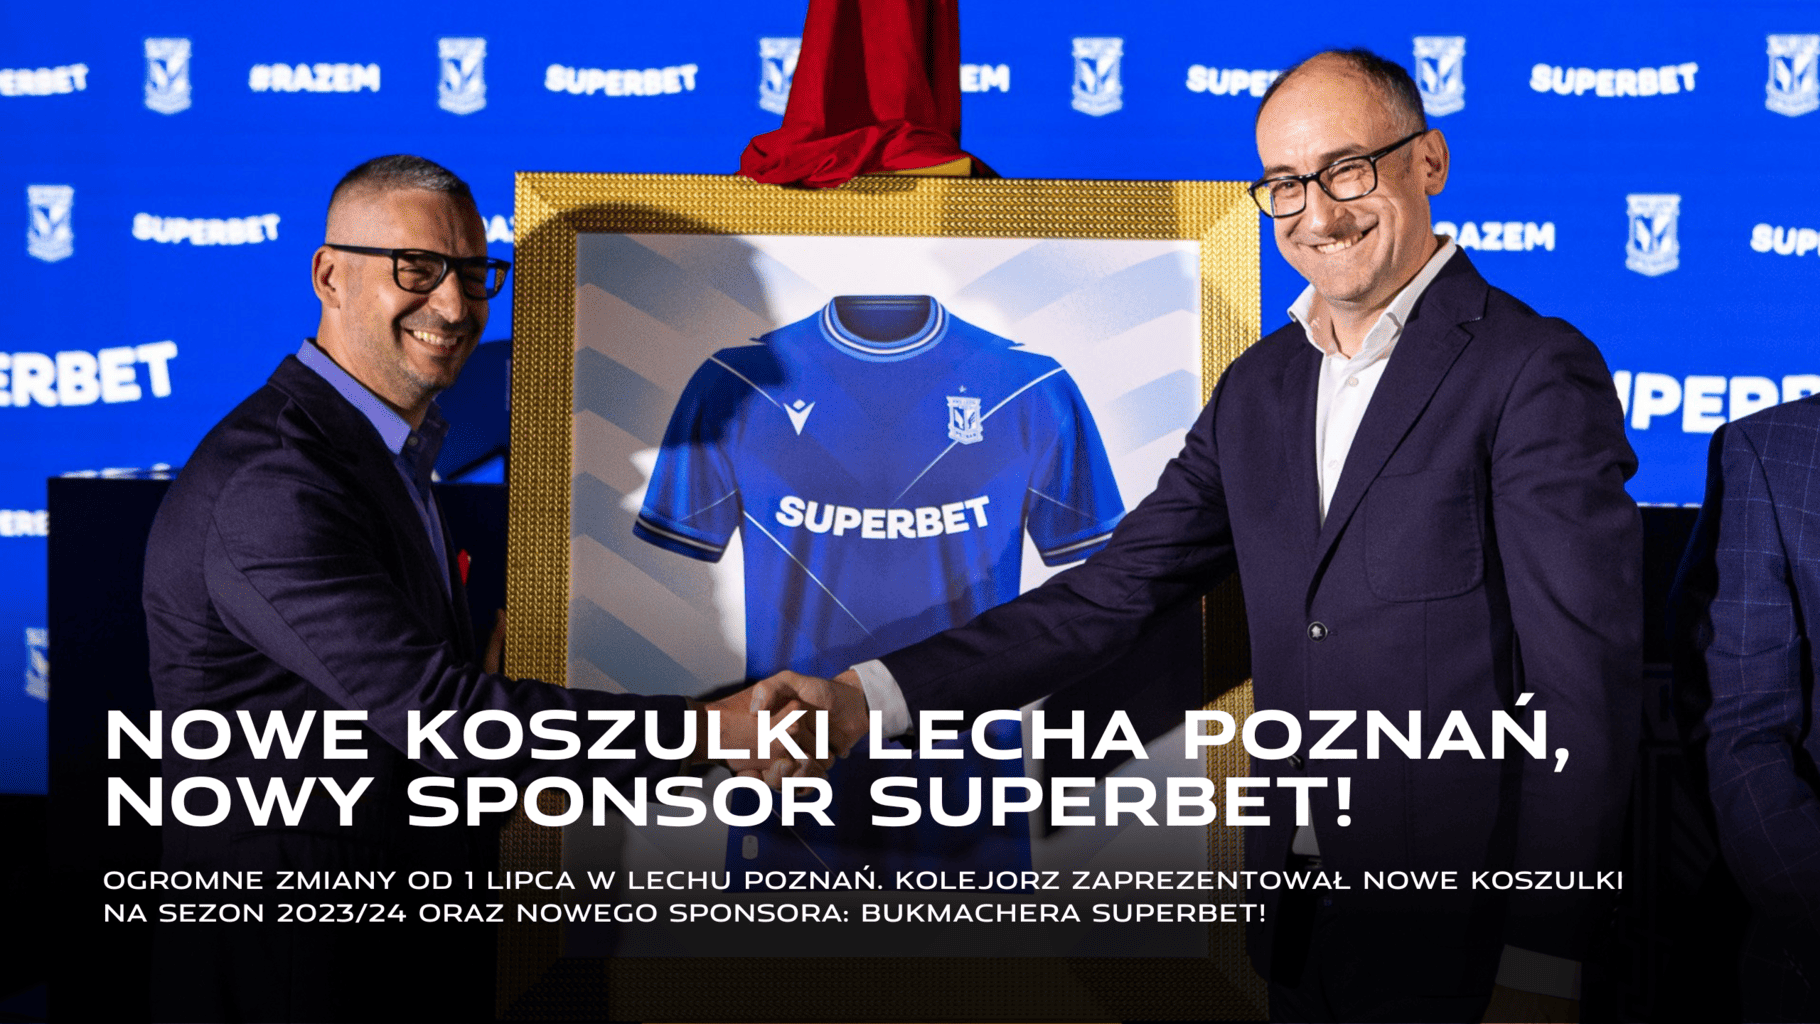 Nowy sponsor, nowe koszulki Lecha Poznań 2023/24: Superbet